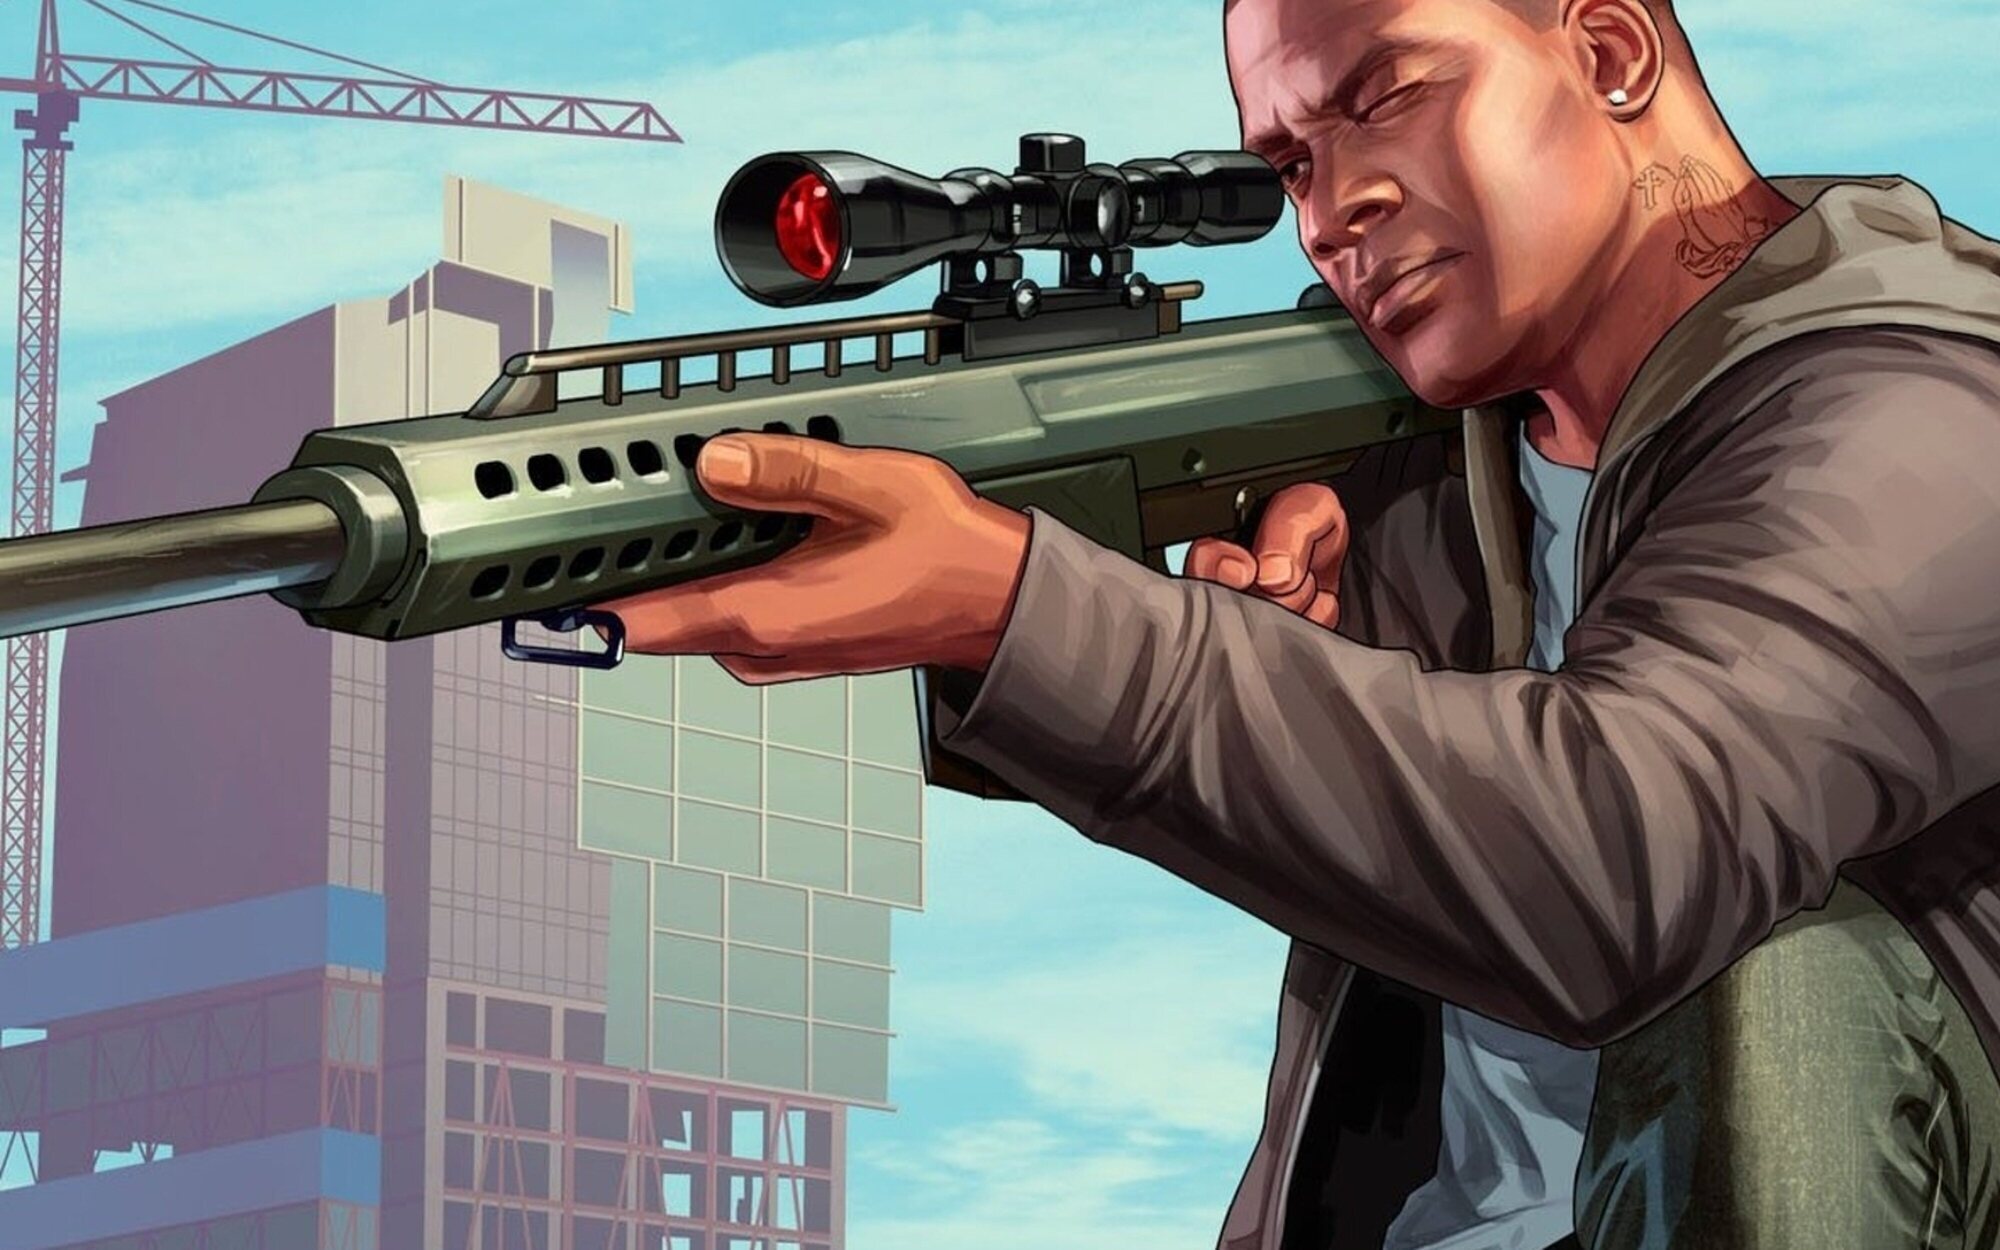 Las filtraciones de 'GTA 6' eran auténticas: Take-Two retira el contenido y le piden negociar